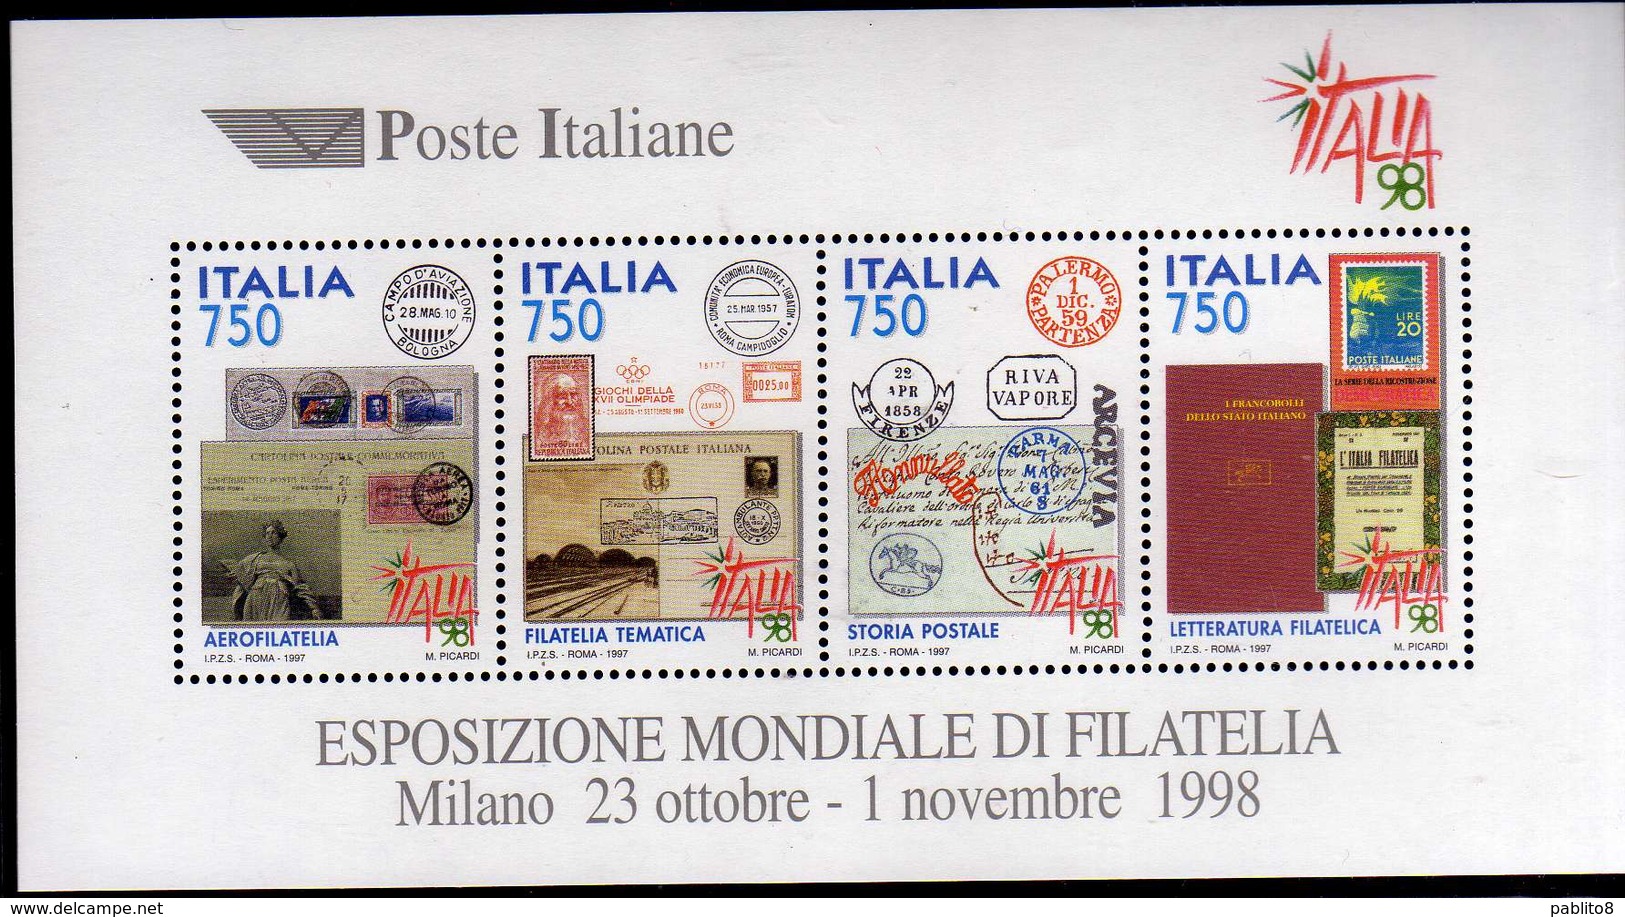 ITALIA REPUBBLICA ITALY 1997 EXPO ESPOSIZIONE MONDIALE FILATELIA STAMP EXHIBITION 98 BLOCCO FOGLIETTO BLOCK SHEET MNH - Blocks & Sheetlets